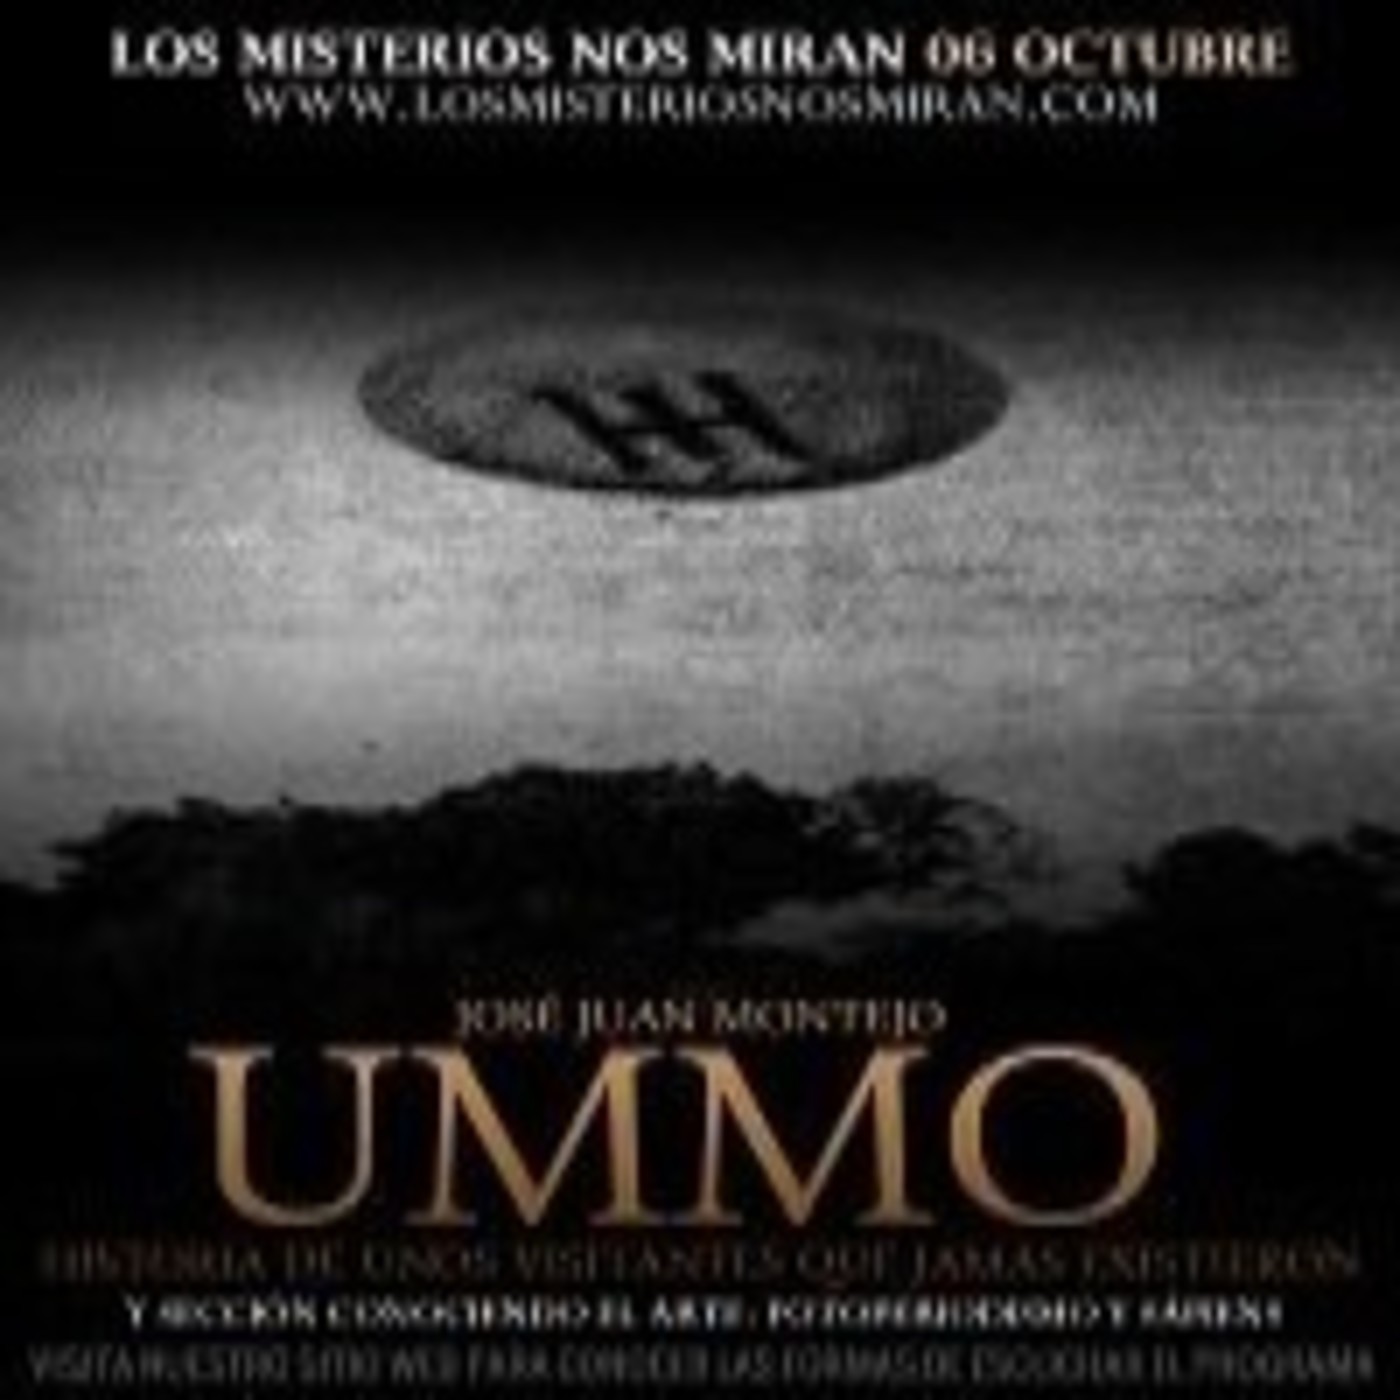 Programa 124: 'UMMO, Historia de unos visitantes que jamás existieron con José J. Montejo' y 'Fotoperiodismo y Sápiens'